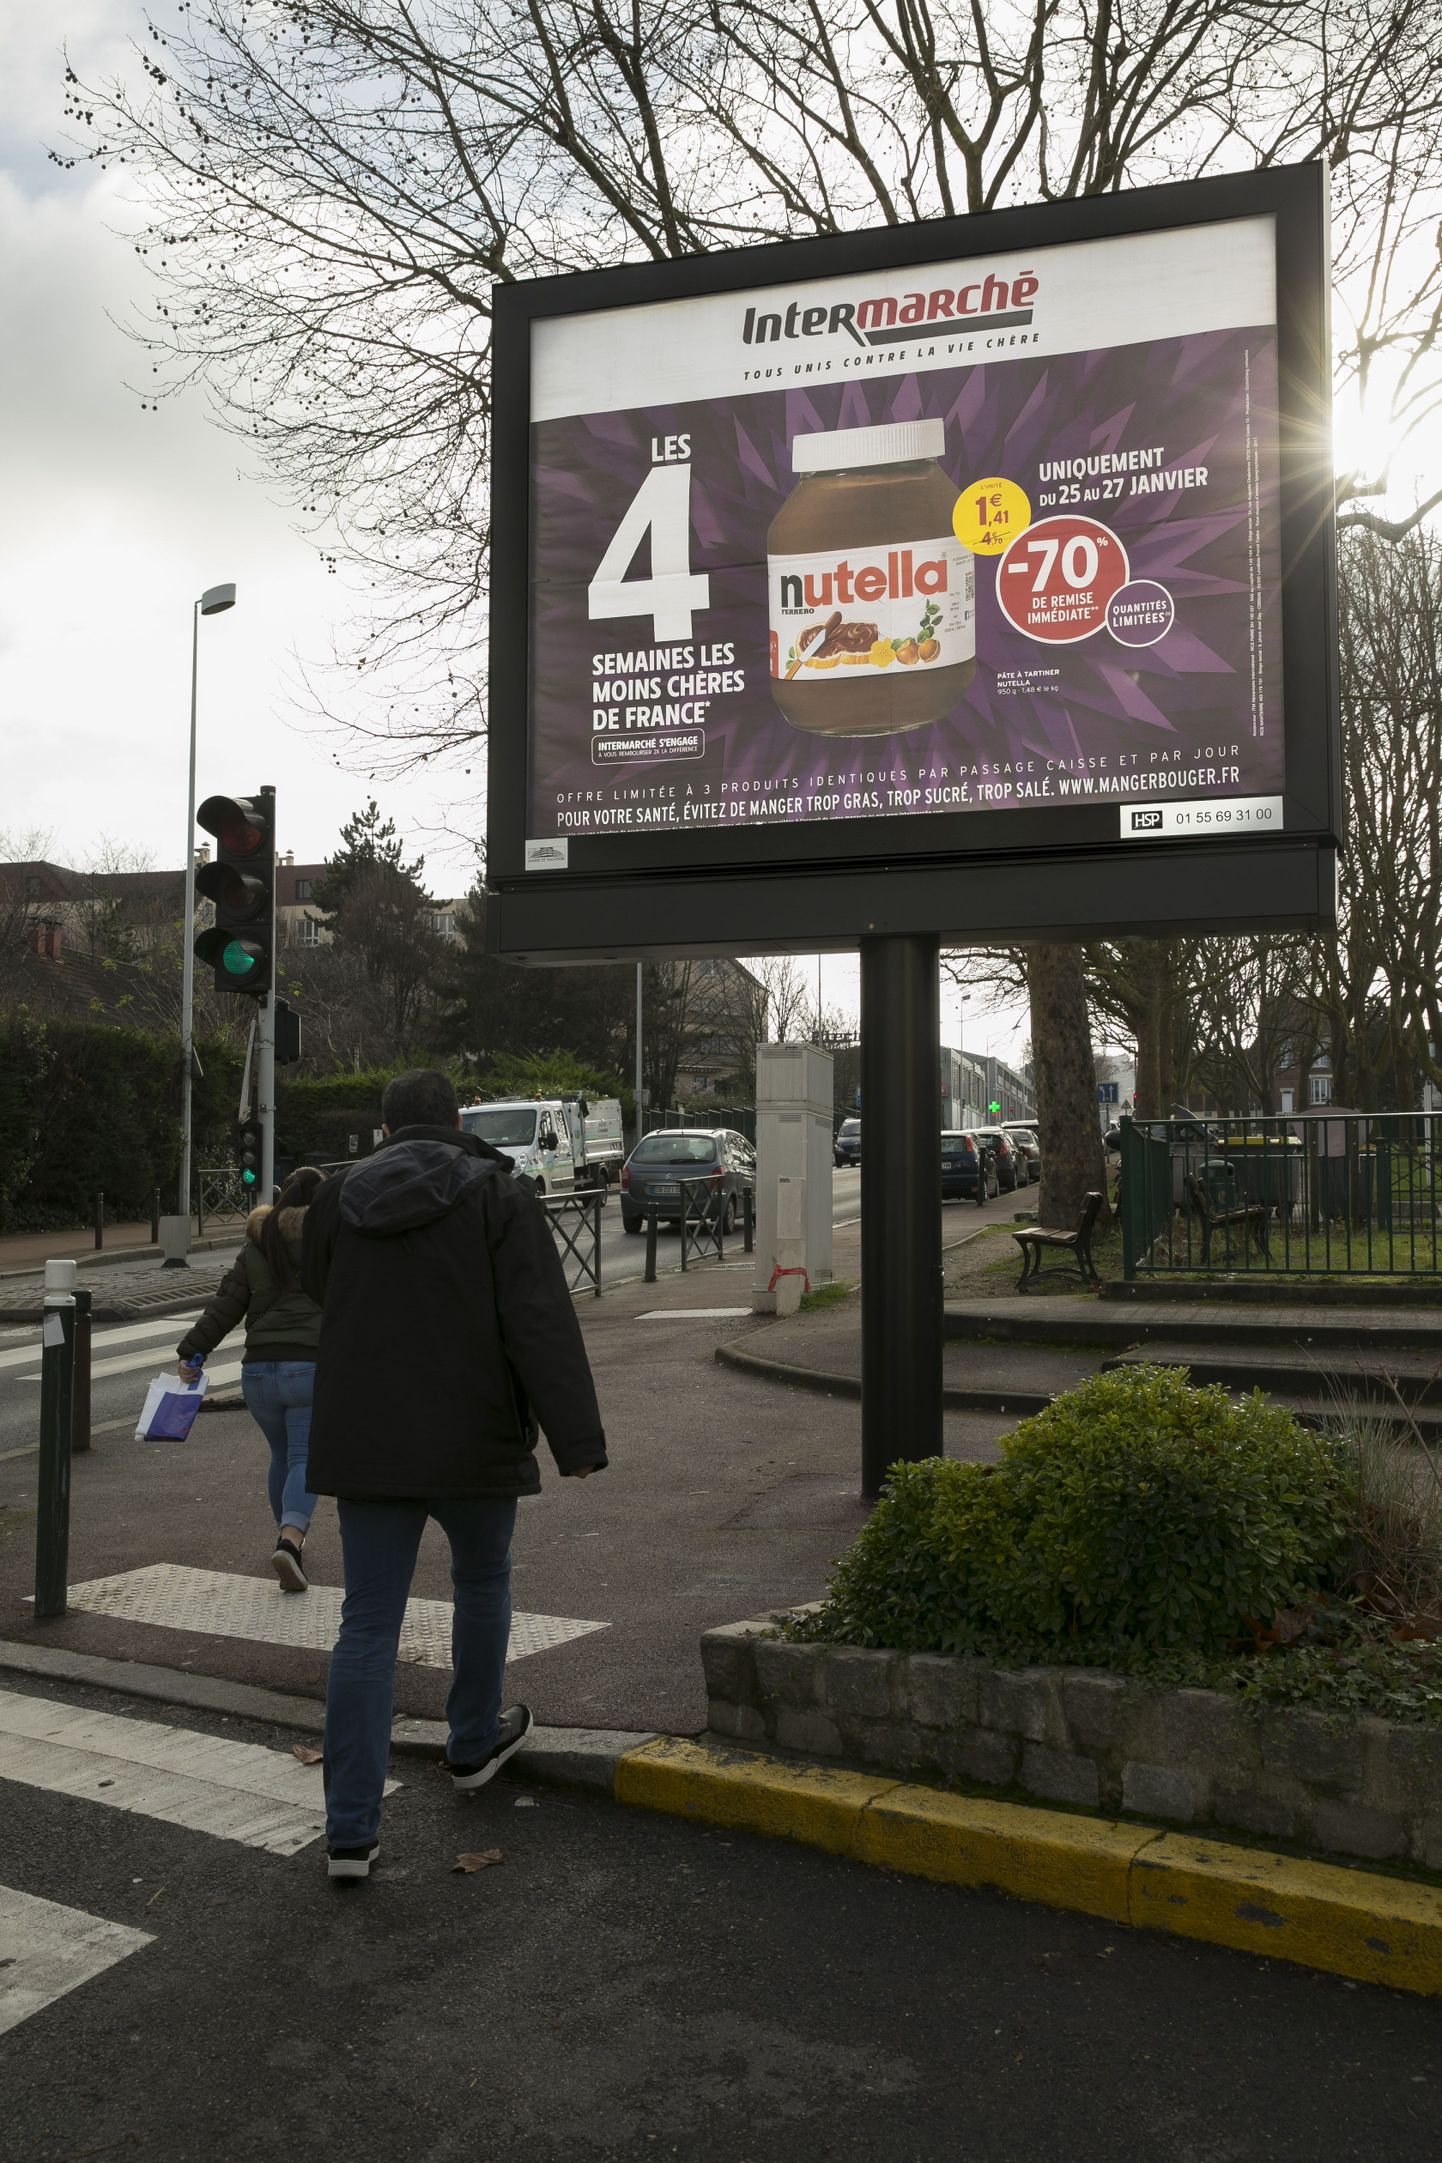 Intermarché reklaam Nanterre'i tänavatel kuulutab, et Nutella on poes saadaval 70-protsendilise allahindlusega. Suur tung maiuse ostmiseks põhjustas mitmes kohas Prantsusmaal poes vägivaldseid stseene.